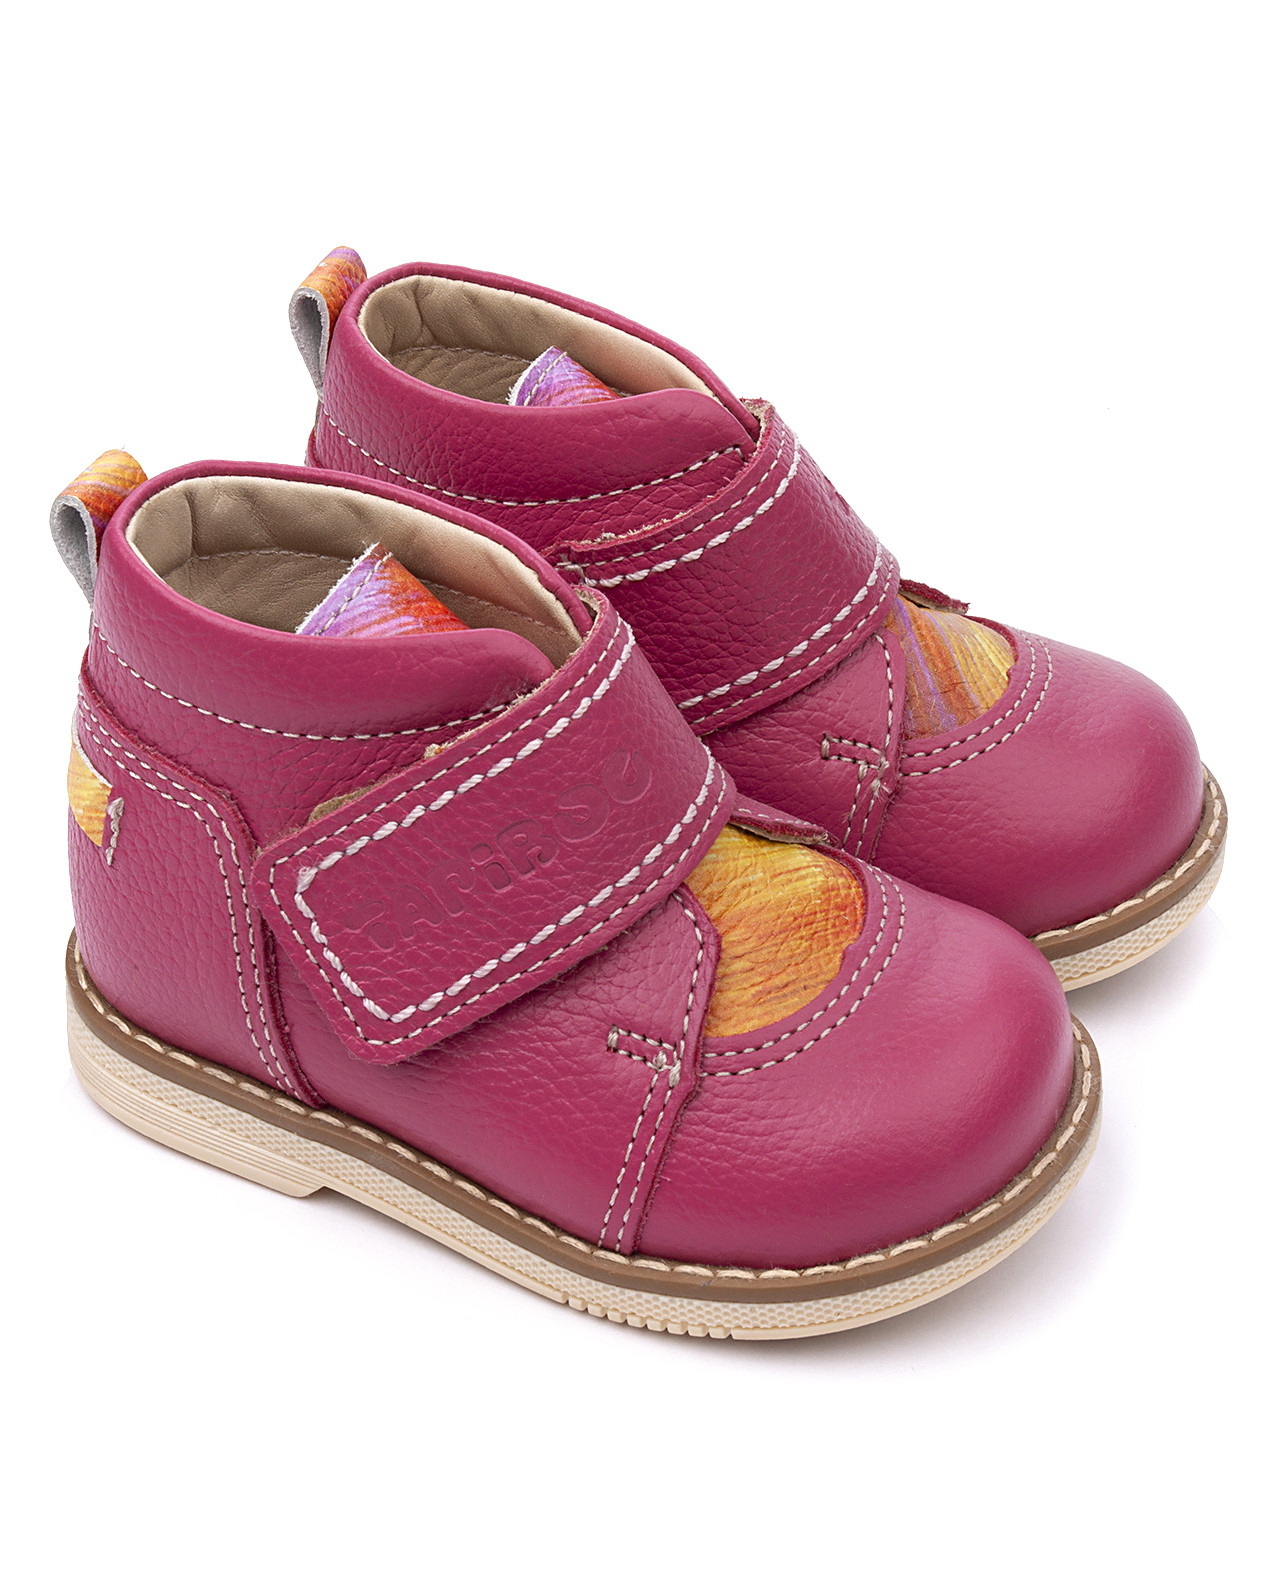 Ботинки детские Tapiboo ФУКСИЯ радуга (76488, 25) ботинки детские 24015 фуксия малиновая радуга 2021 р18